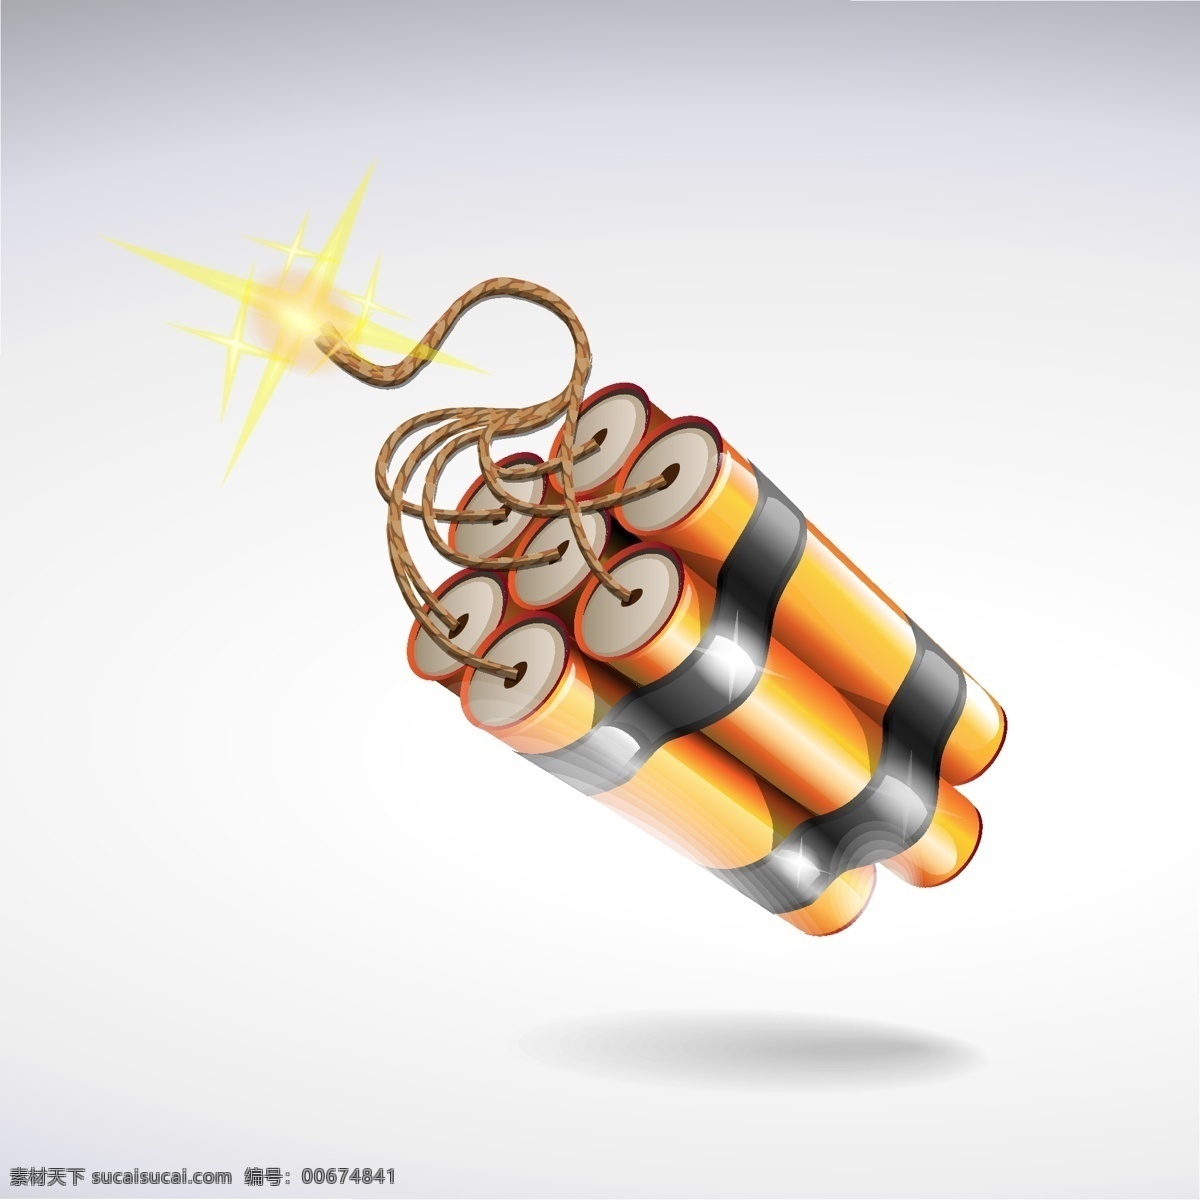 燃烧的炸弹 炸药 炸弹 图标武器 装备 军事武器 雷管 火花 eps格式